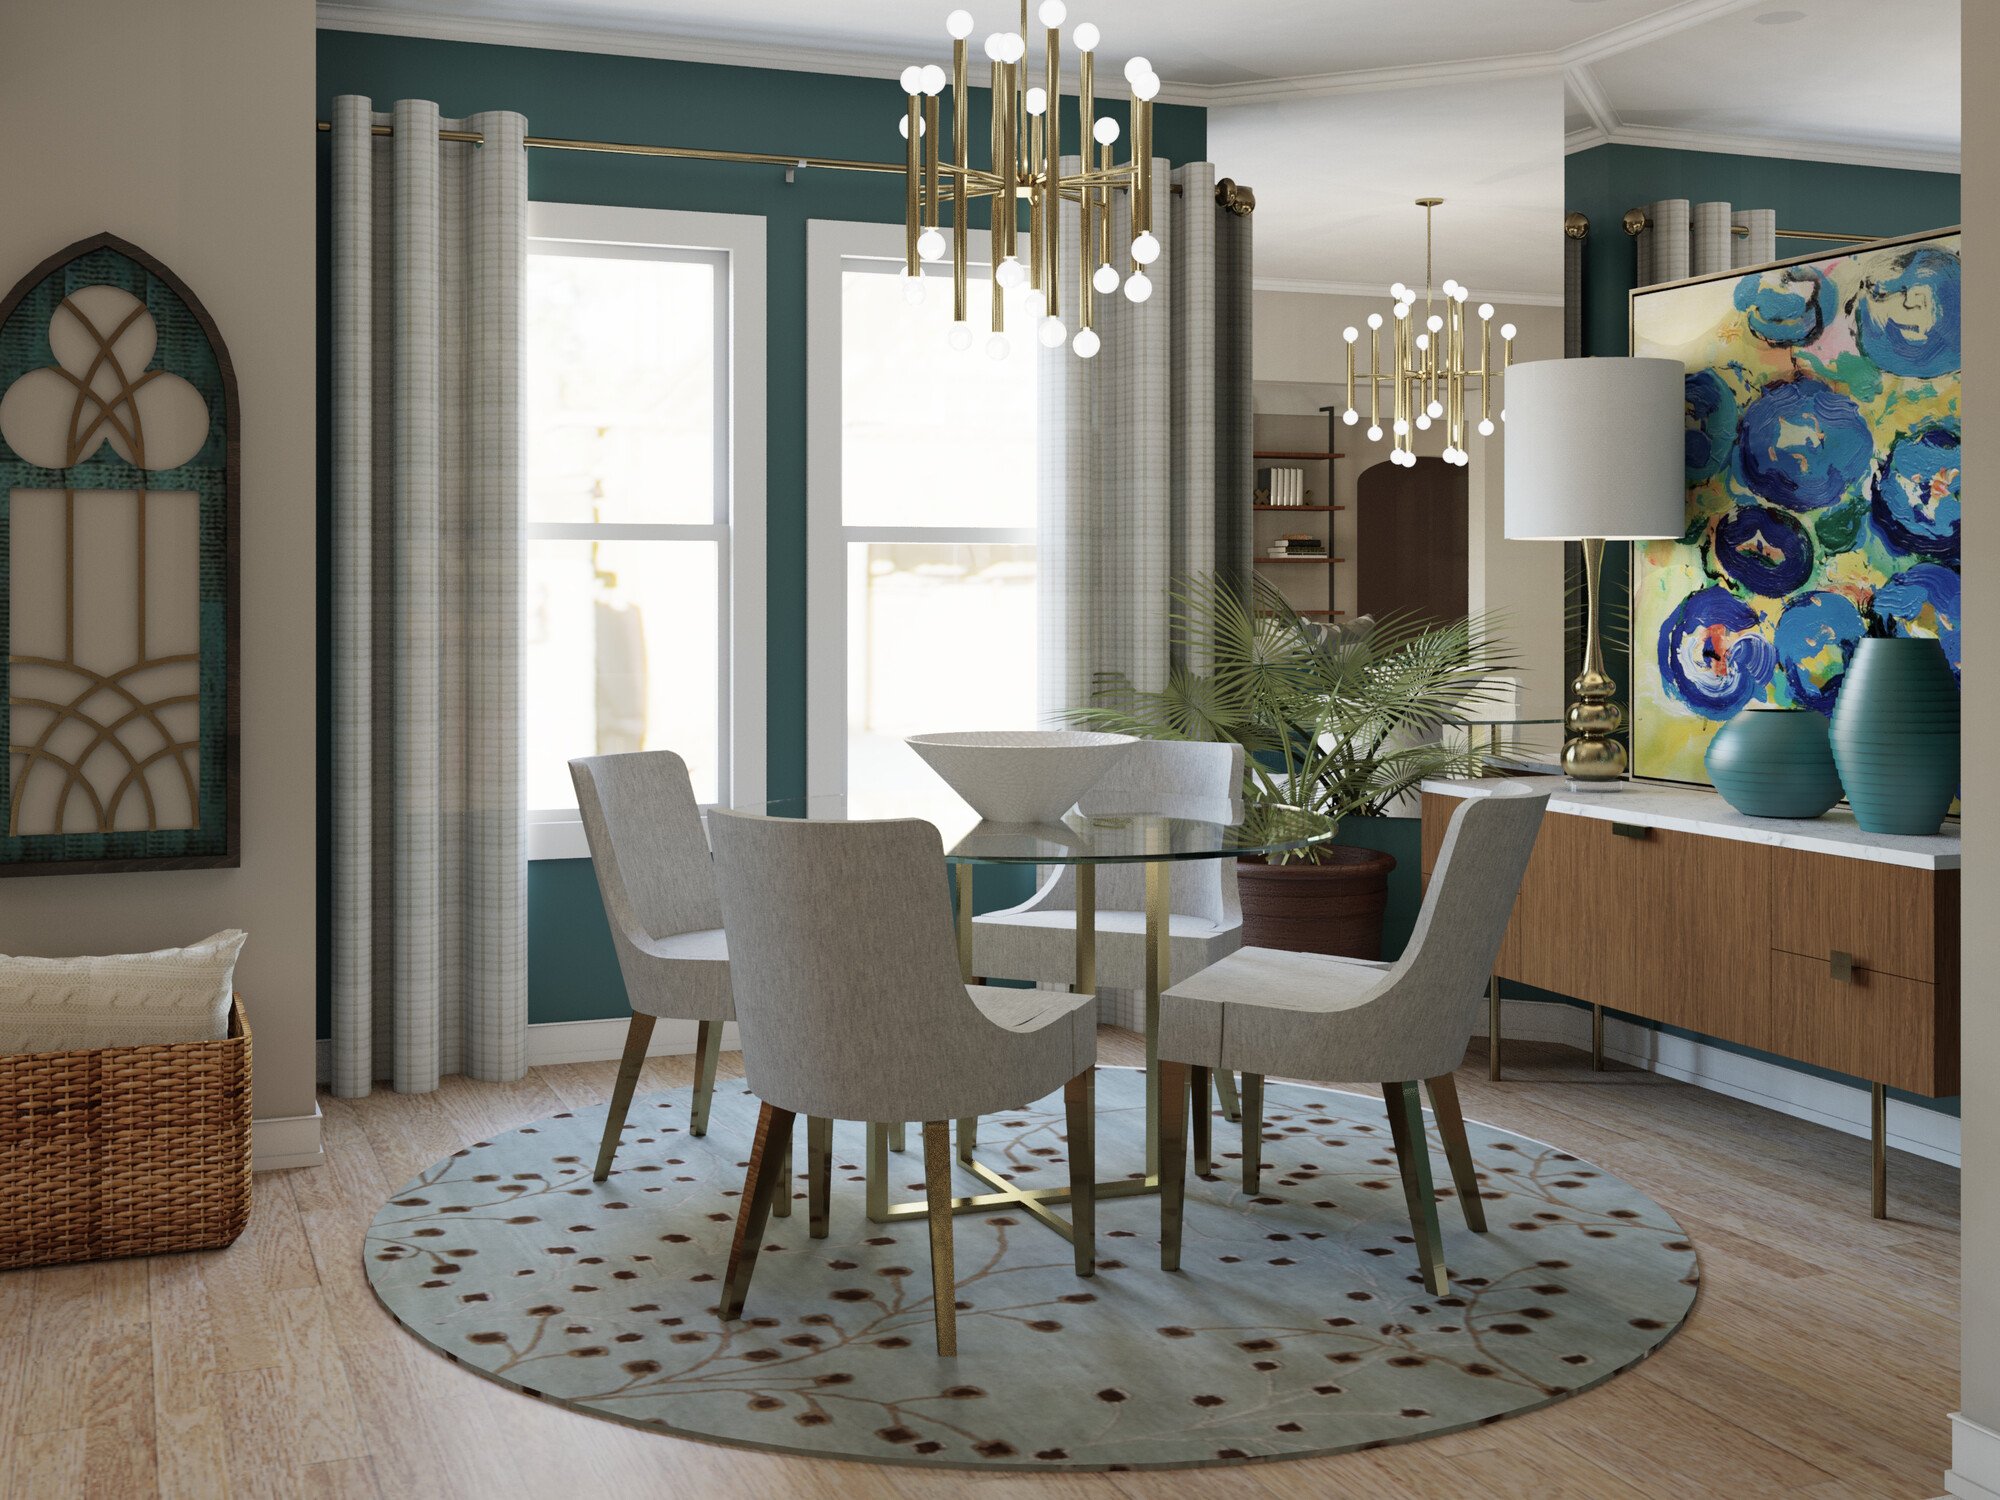 Online Living Dining Room Design interior design help 4